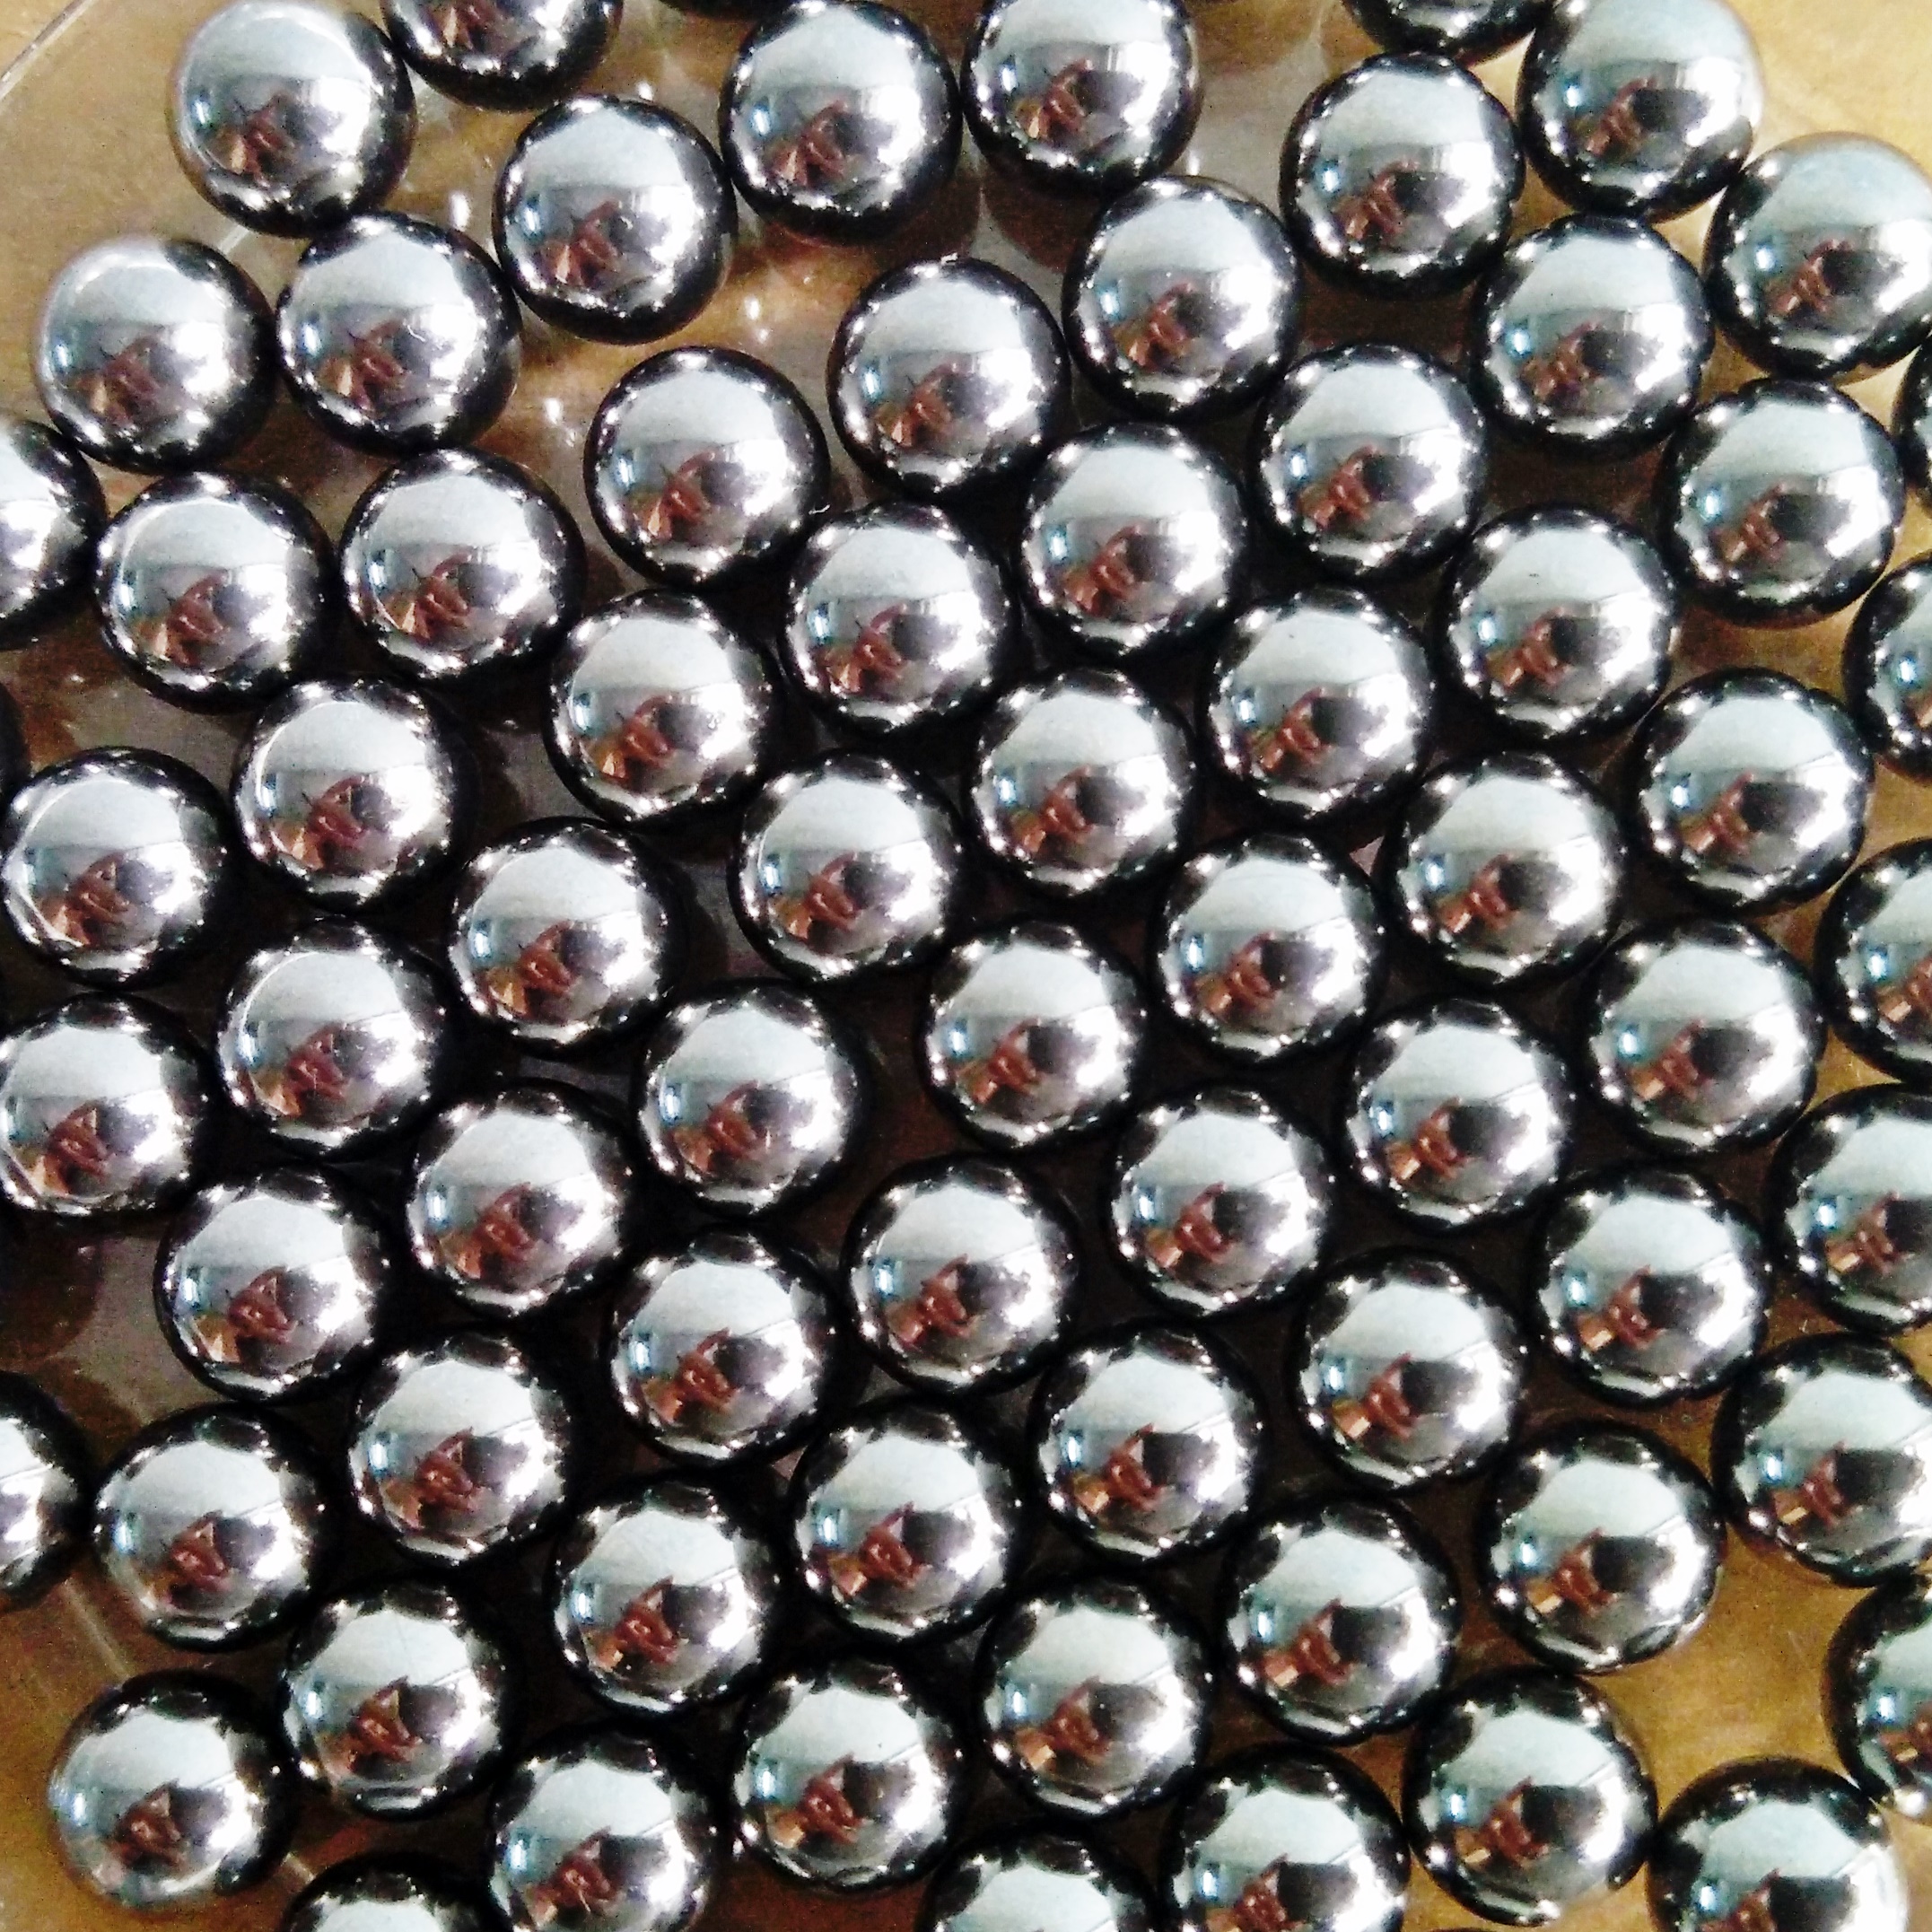 Tangeseiki Bearing Balls 1/4" (Grade 100 ) Pack of 200 balls